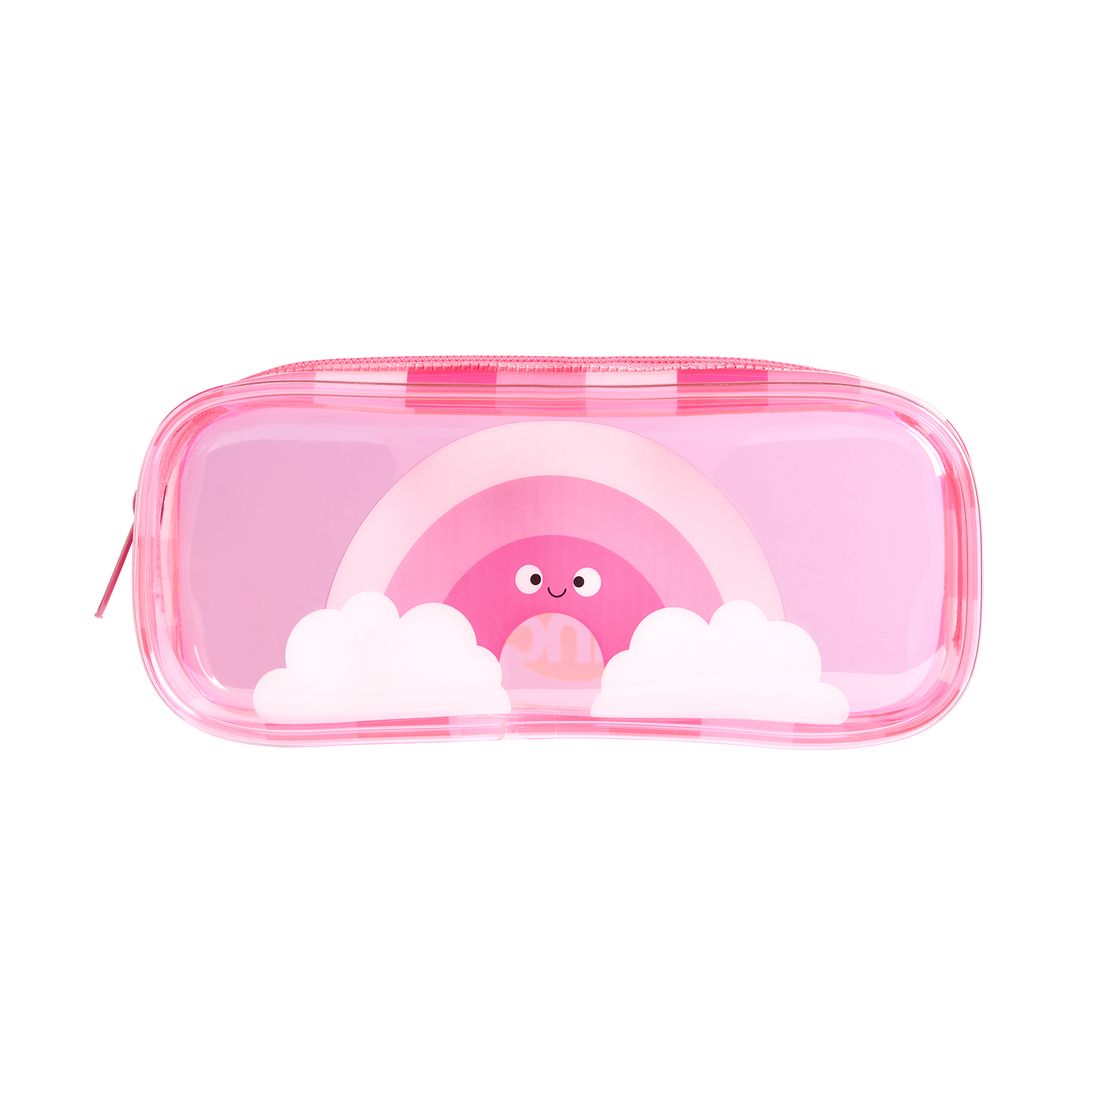 Tinc Mallo Pink Pvc Pencil Case - Pink